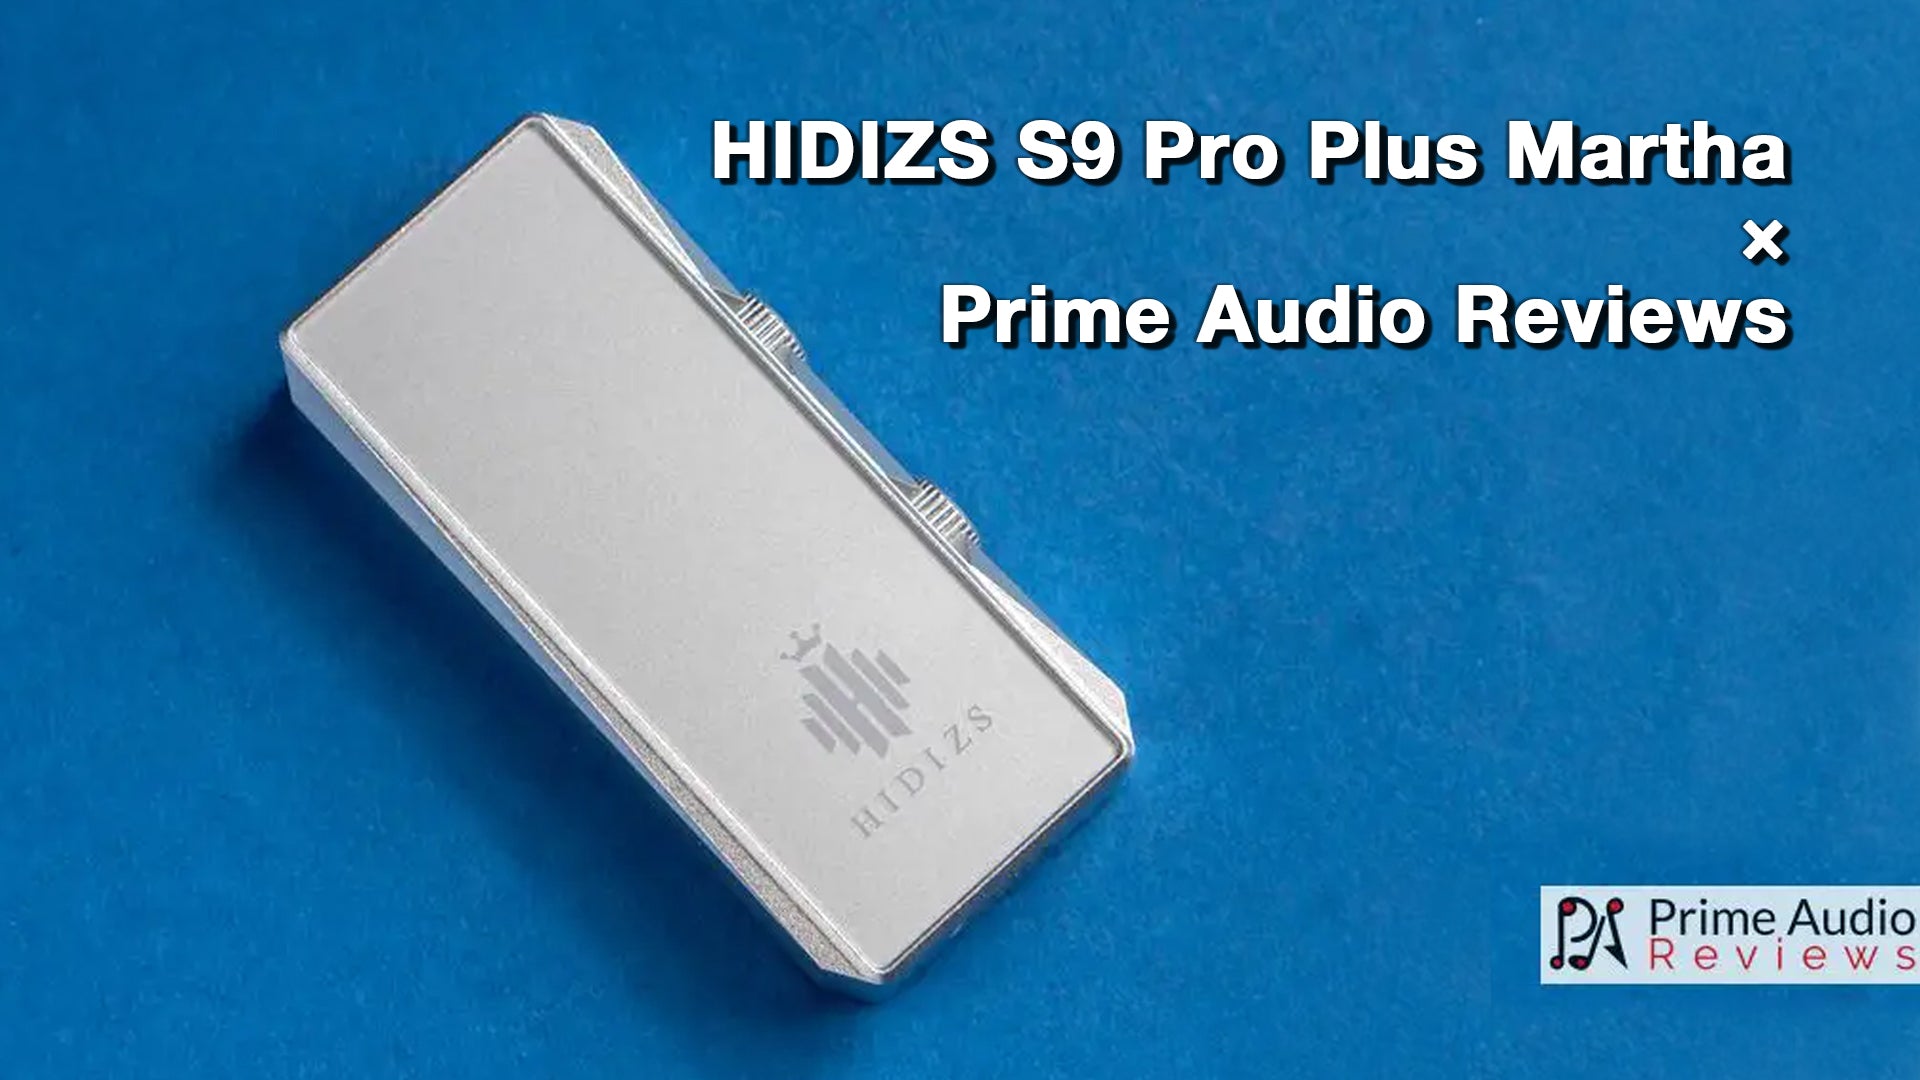 HIDIZS S9 Pro Plus Martha Review - Prime Audio Reviews